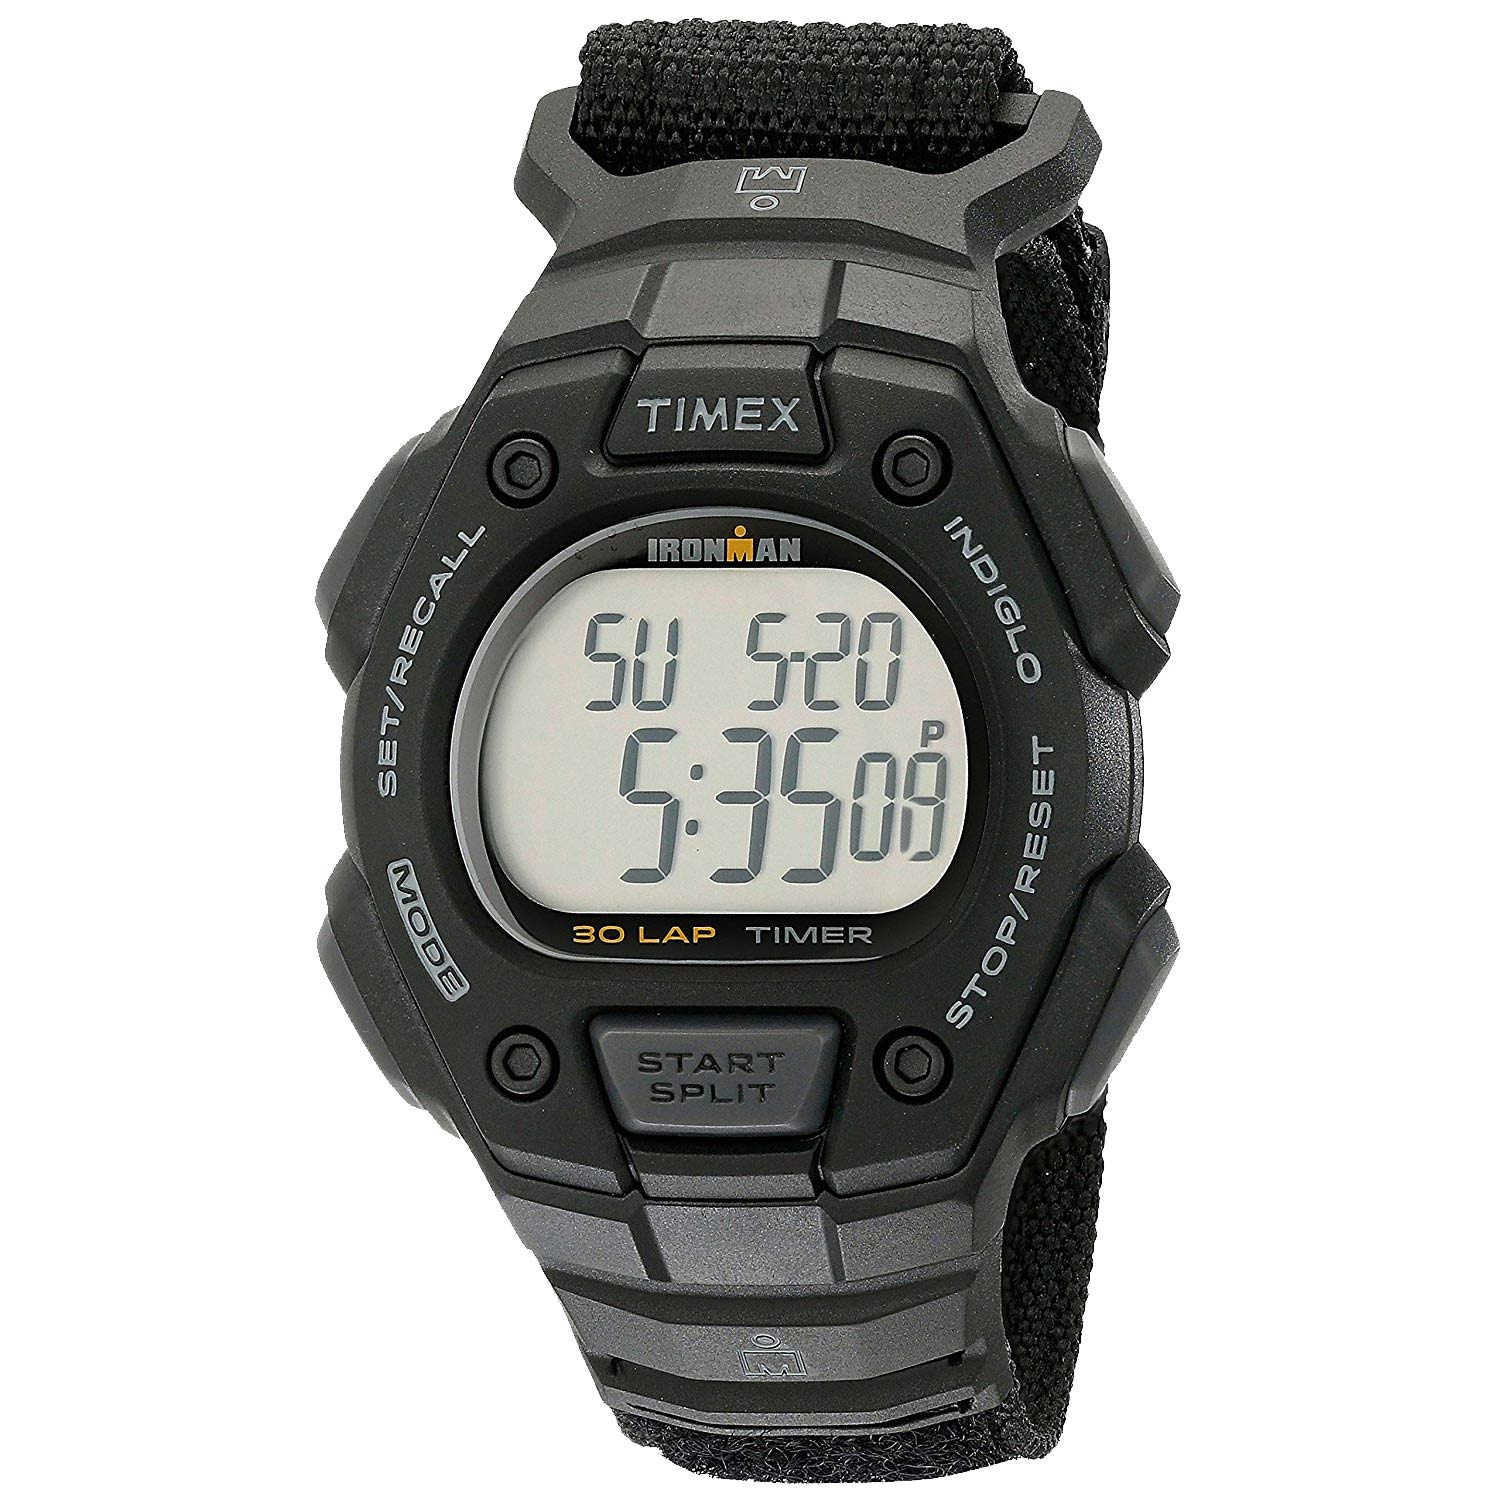 Timex-Ironman-TW5K90800-digitale-Sportuhr-Outdoor-Uhr-in-Schwarz-mit-Nylonarmband